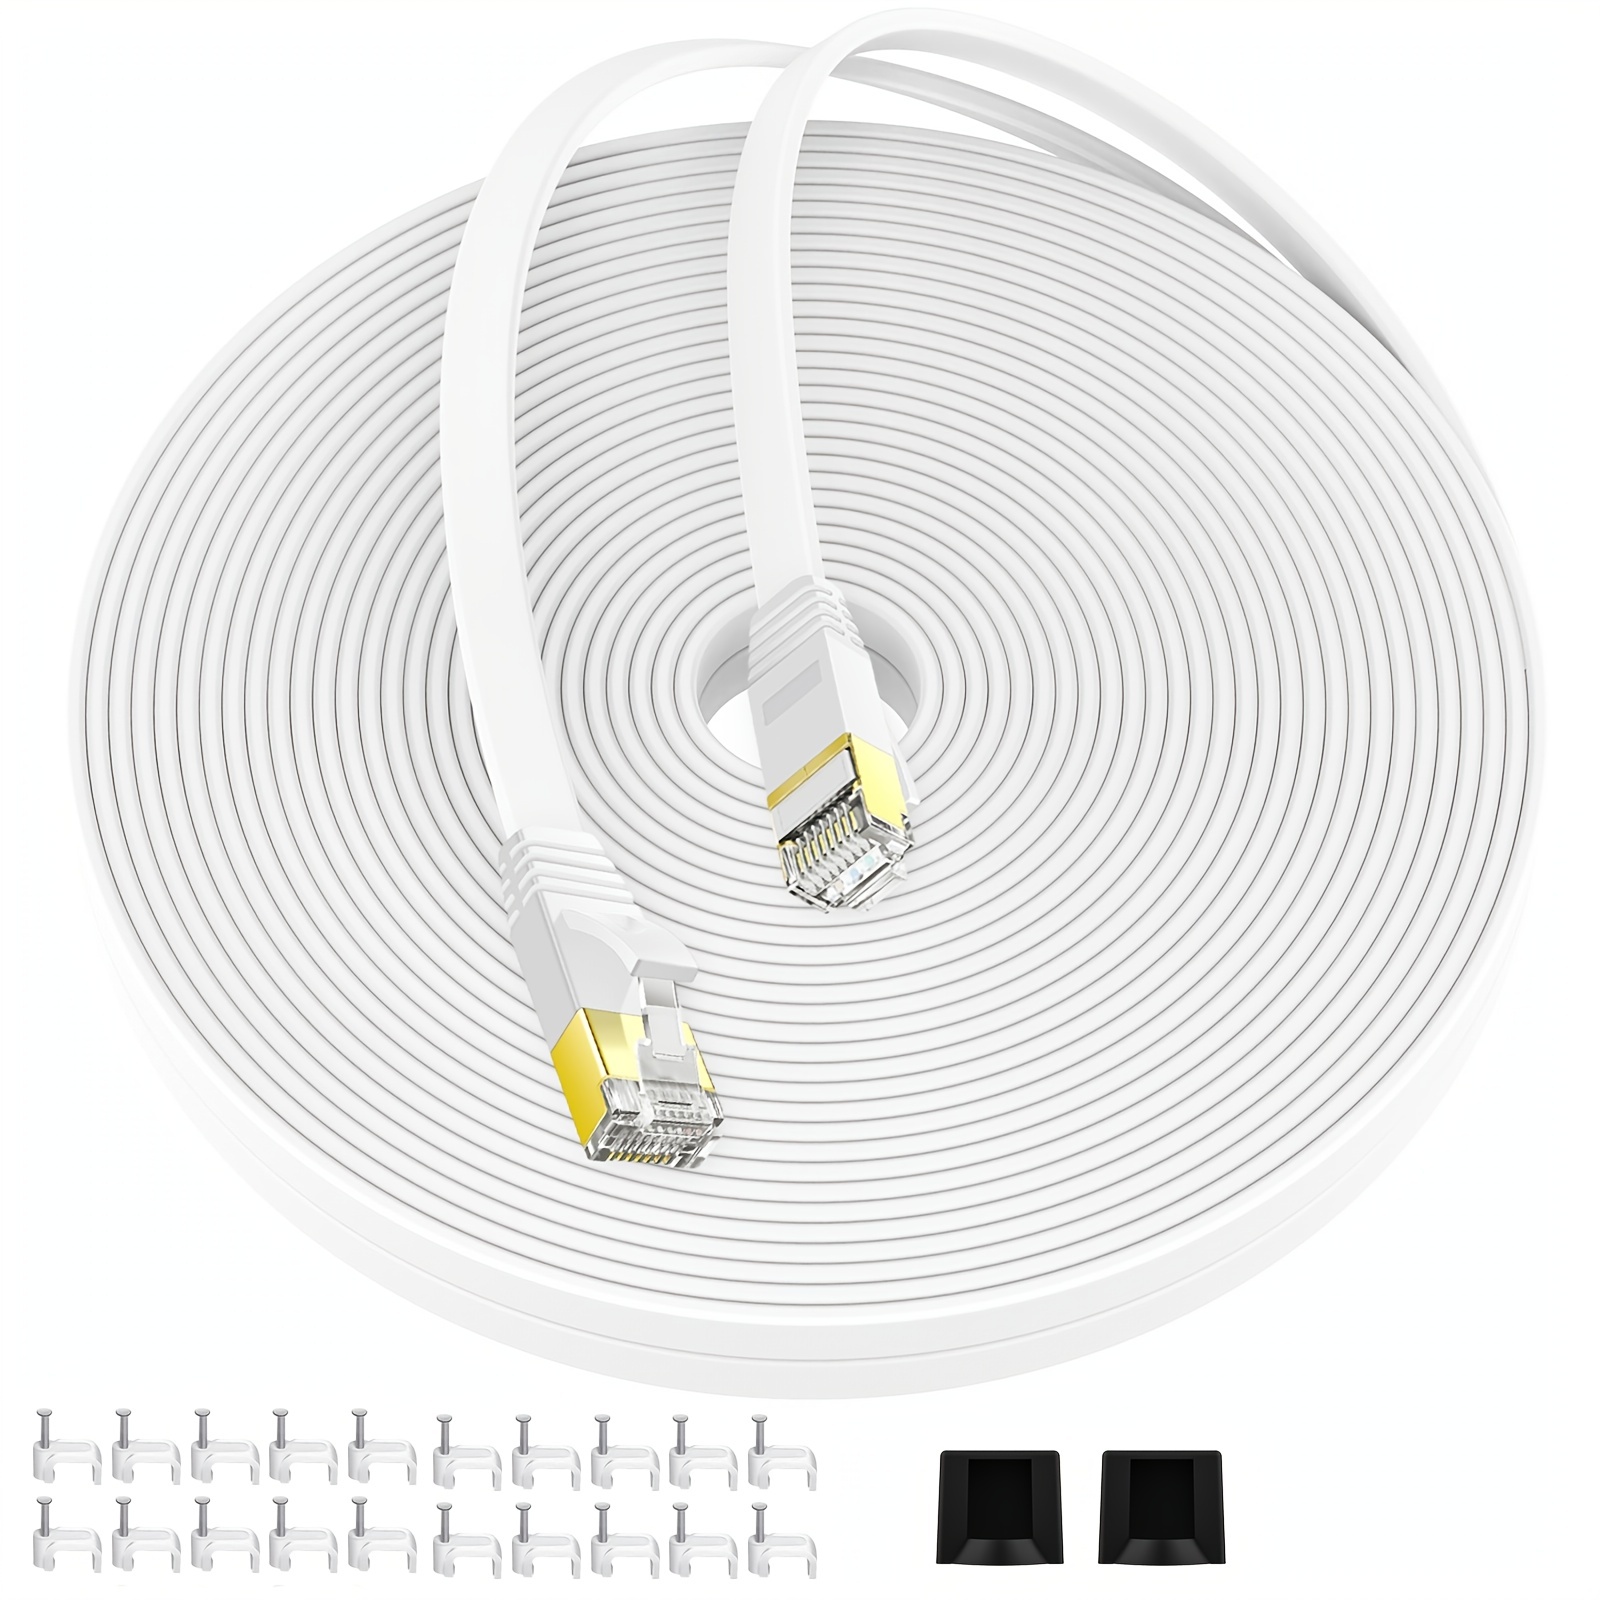 AMPCOM Ethernet Cable RJ45 Cat7 Lan Cable 1M 1.5M 2M 3M STP RJ 45 Flat  Network Cable Patch Cord Cable Ethernet